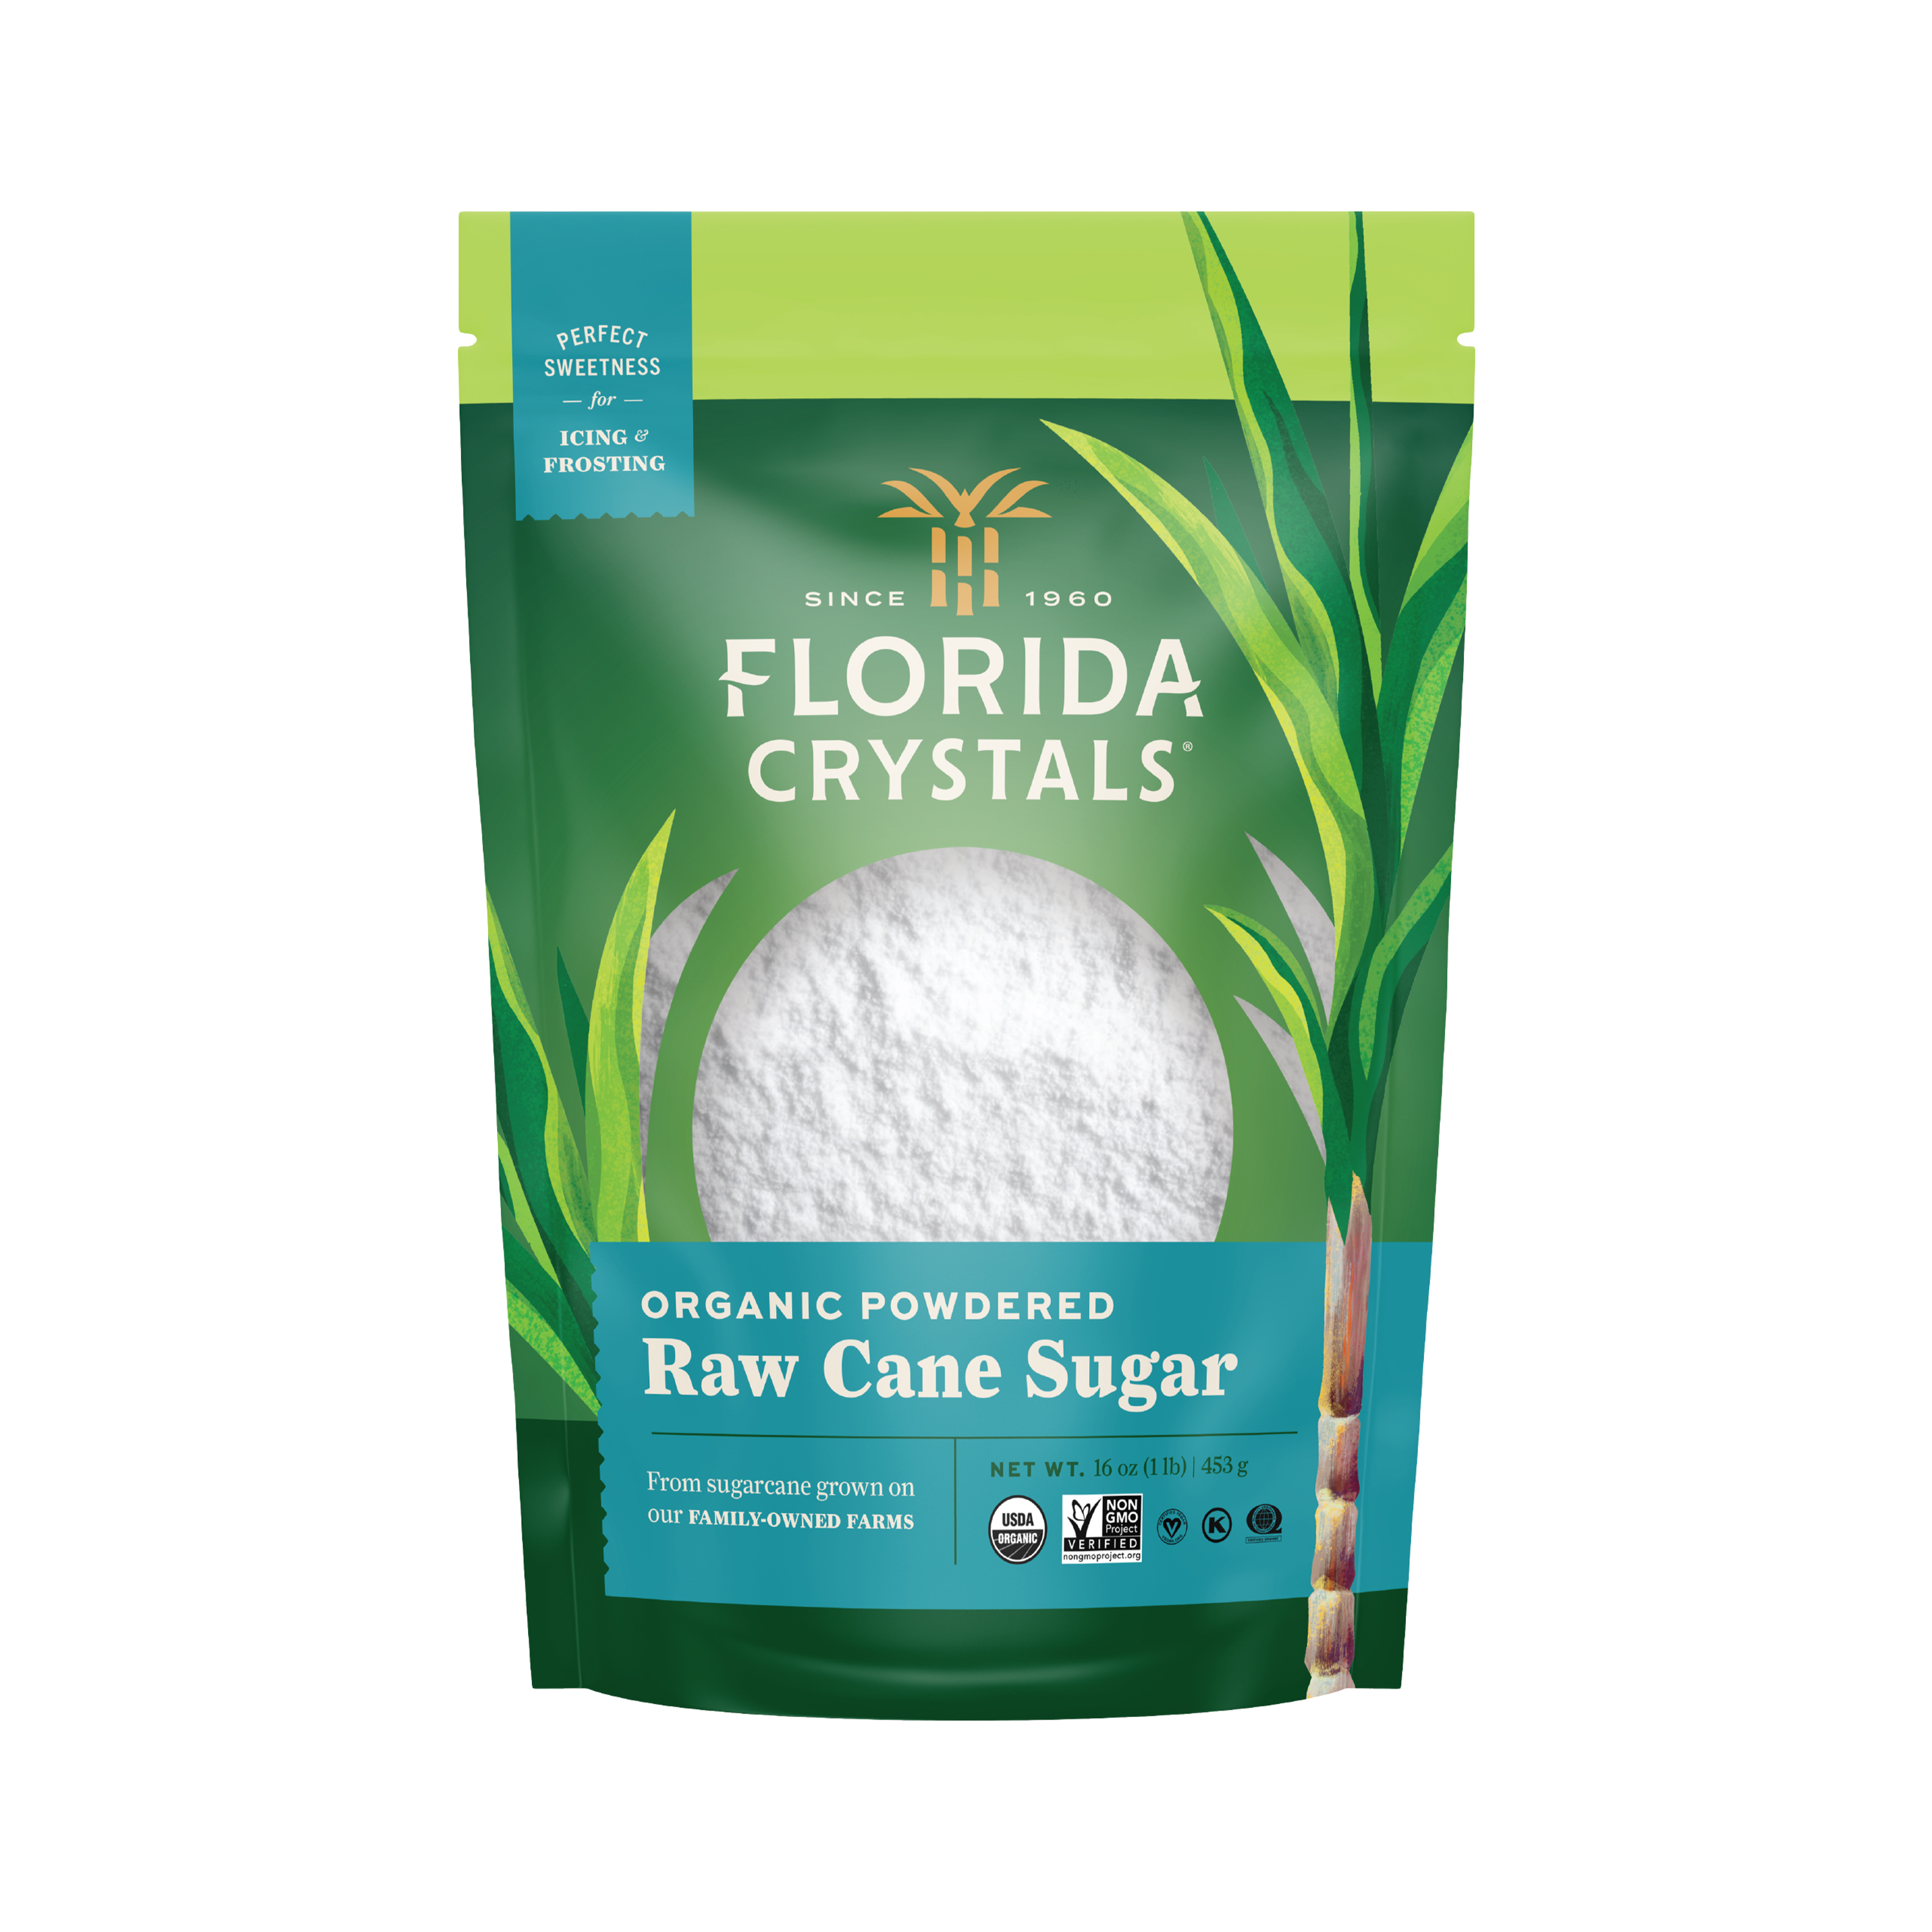 Florida Crystals® Organic Powdered Raw Cane Sugar 16 oz